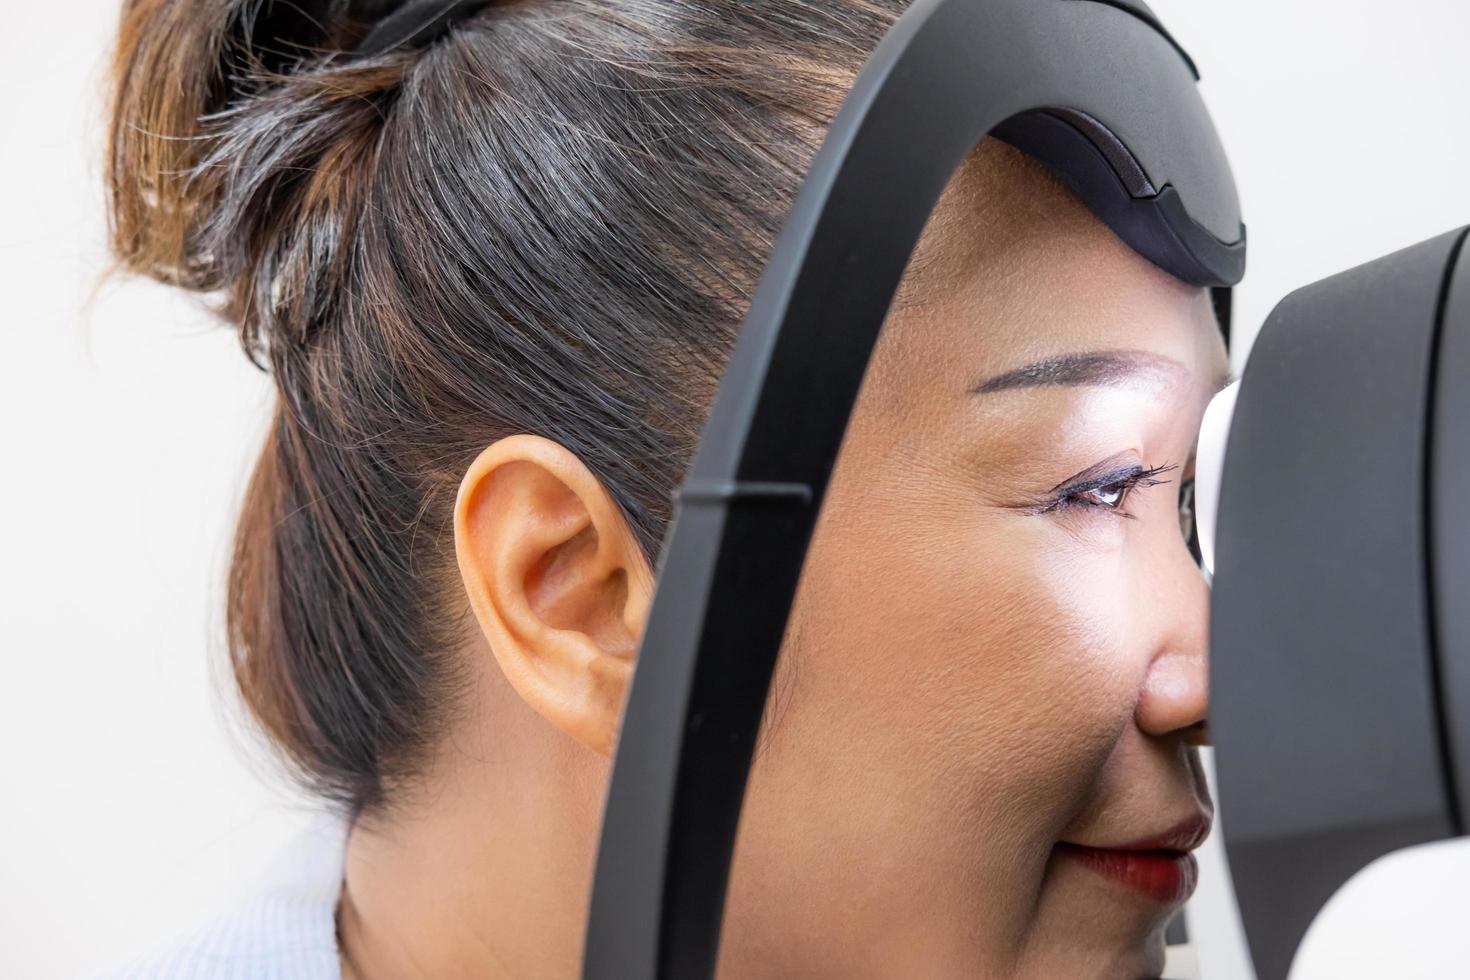 Sambuco asiatico donne a il optometria attrezzatura. mentre optometrista utilizzando soggettivo rifrazione per esaminare occhio visivo sistema di Sambuco paziente donne con professionale macchina prima fatto occhiali. foto